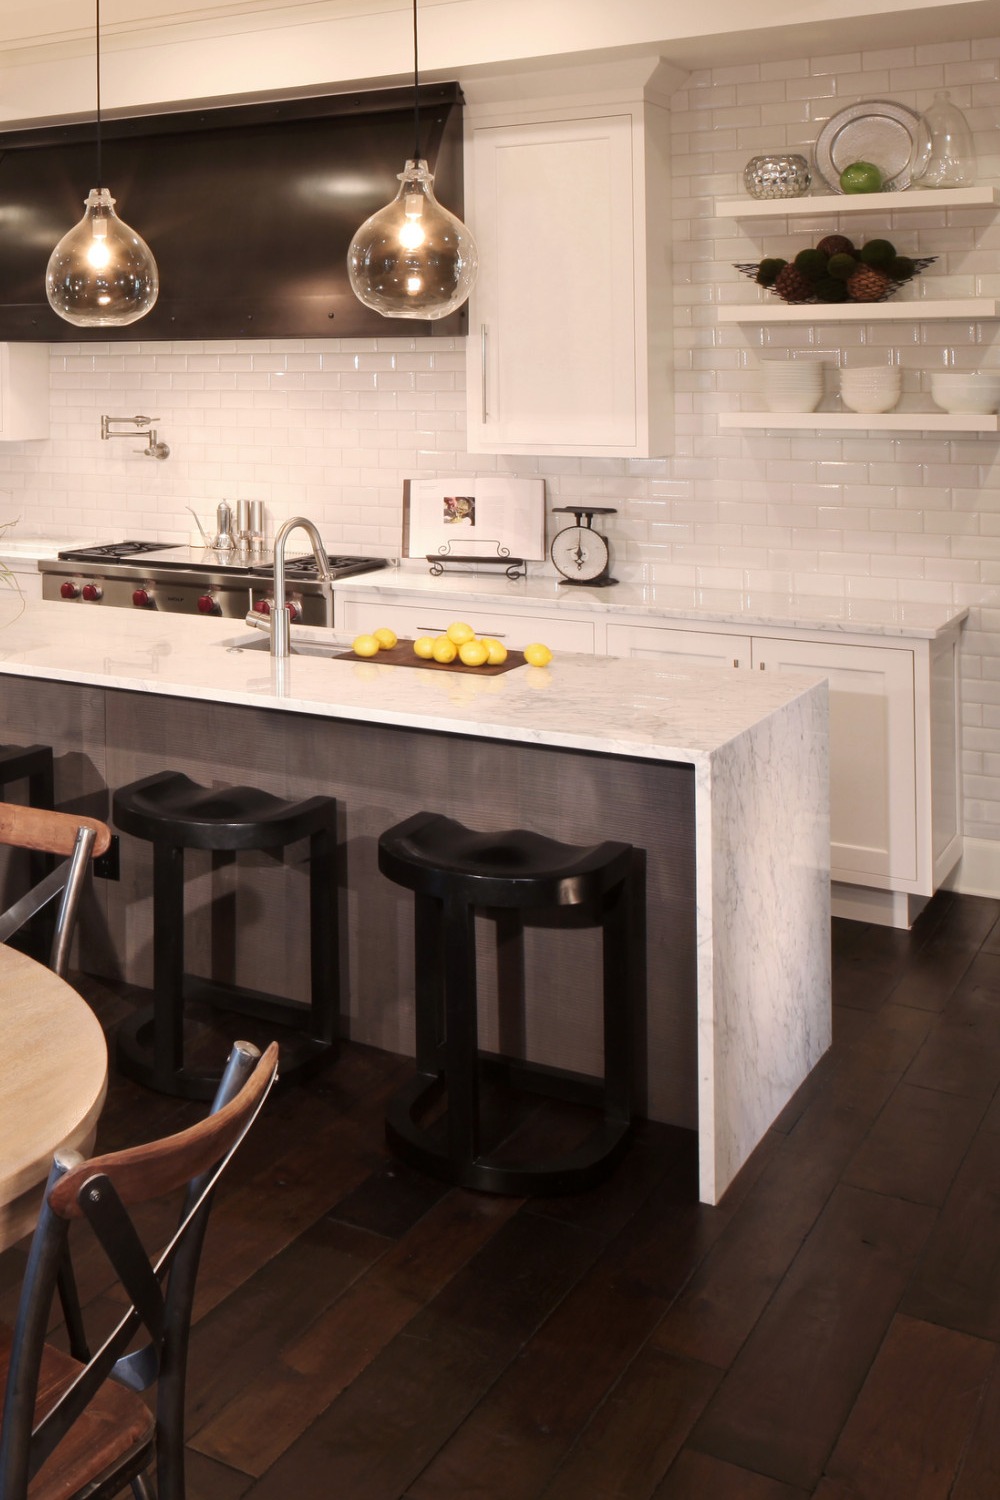 Porcelain Backsplash Tiles Marble Counters Brown Hardwood Flooring Cabinet